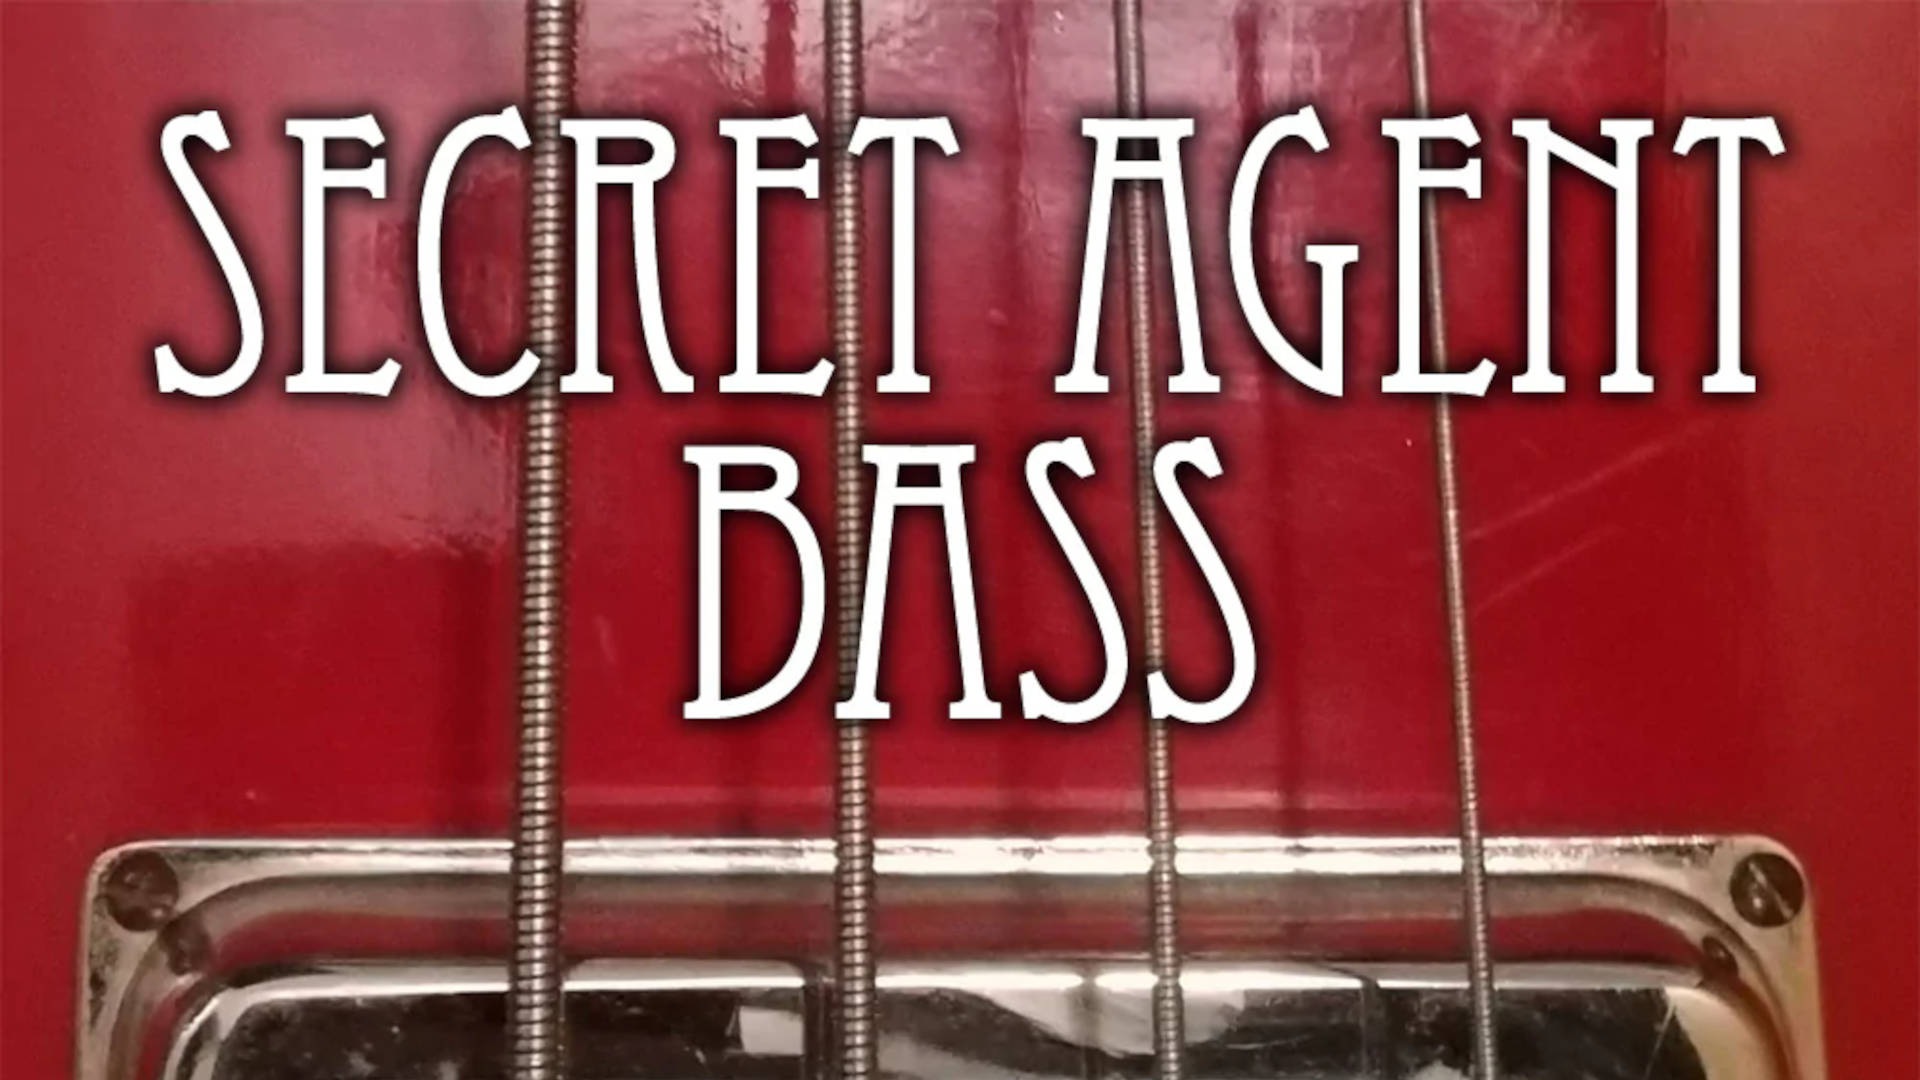 Secret Agent Bass